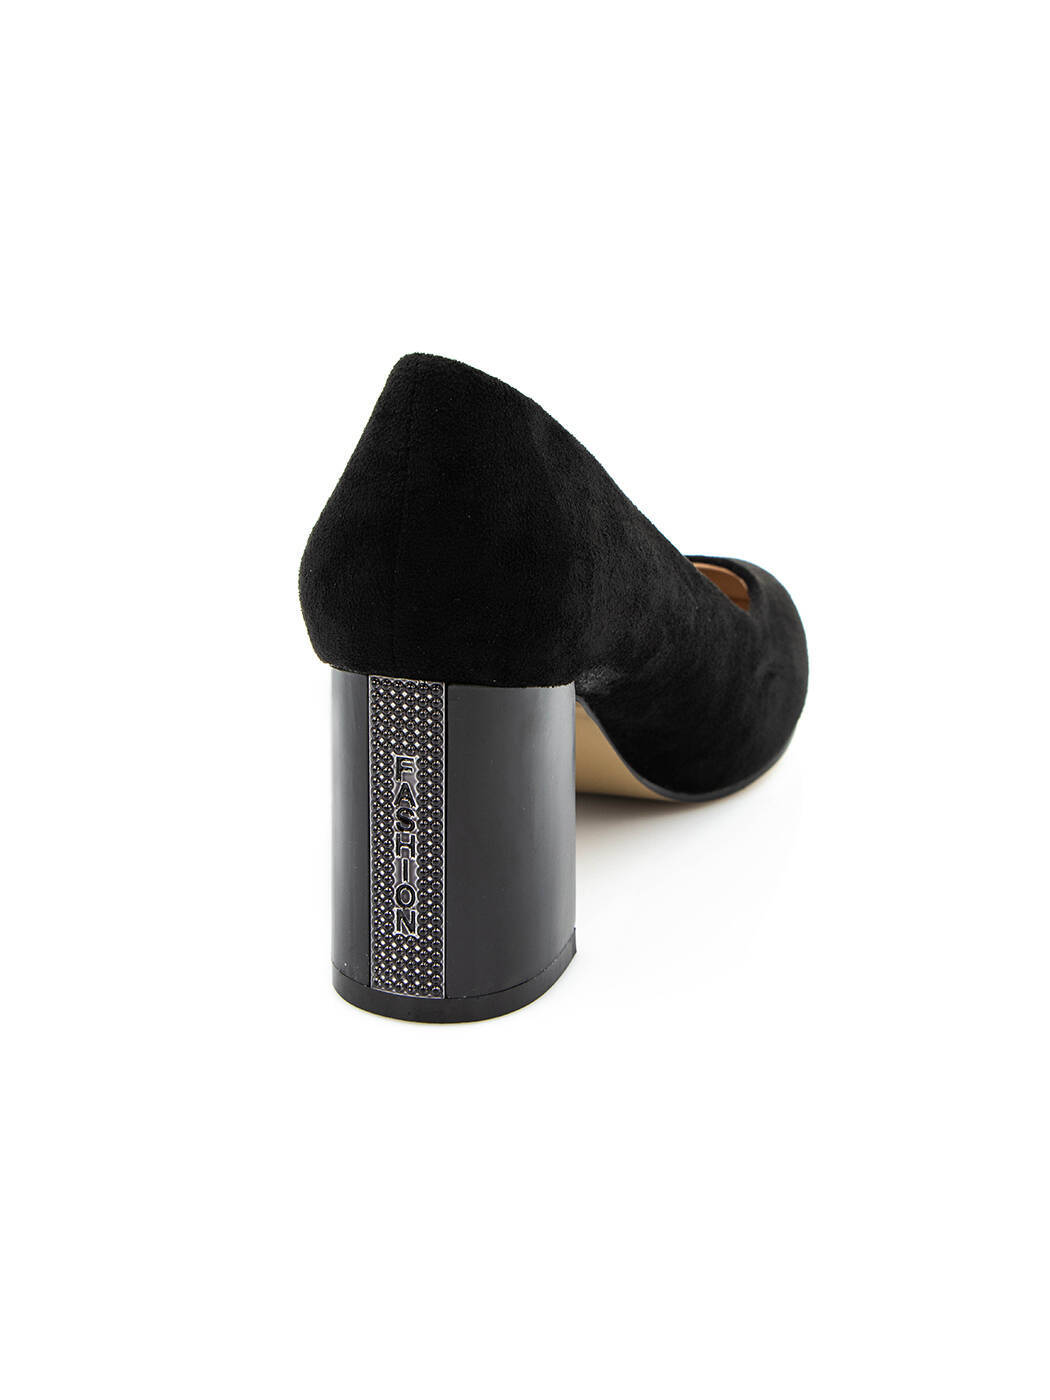 Туфли женские черные экозамша каблук устойчивый демисезон от производителя 1M вид 0